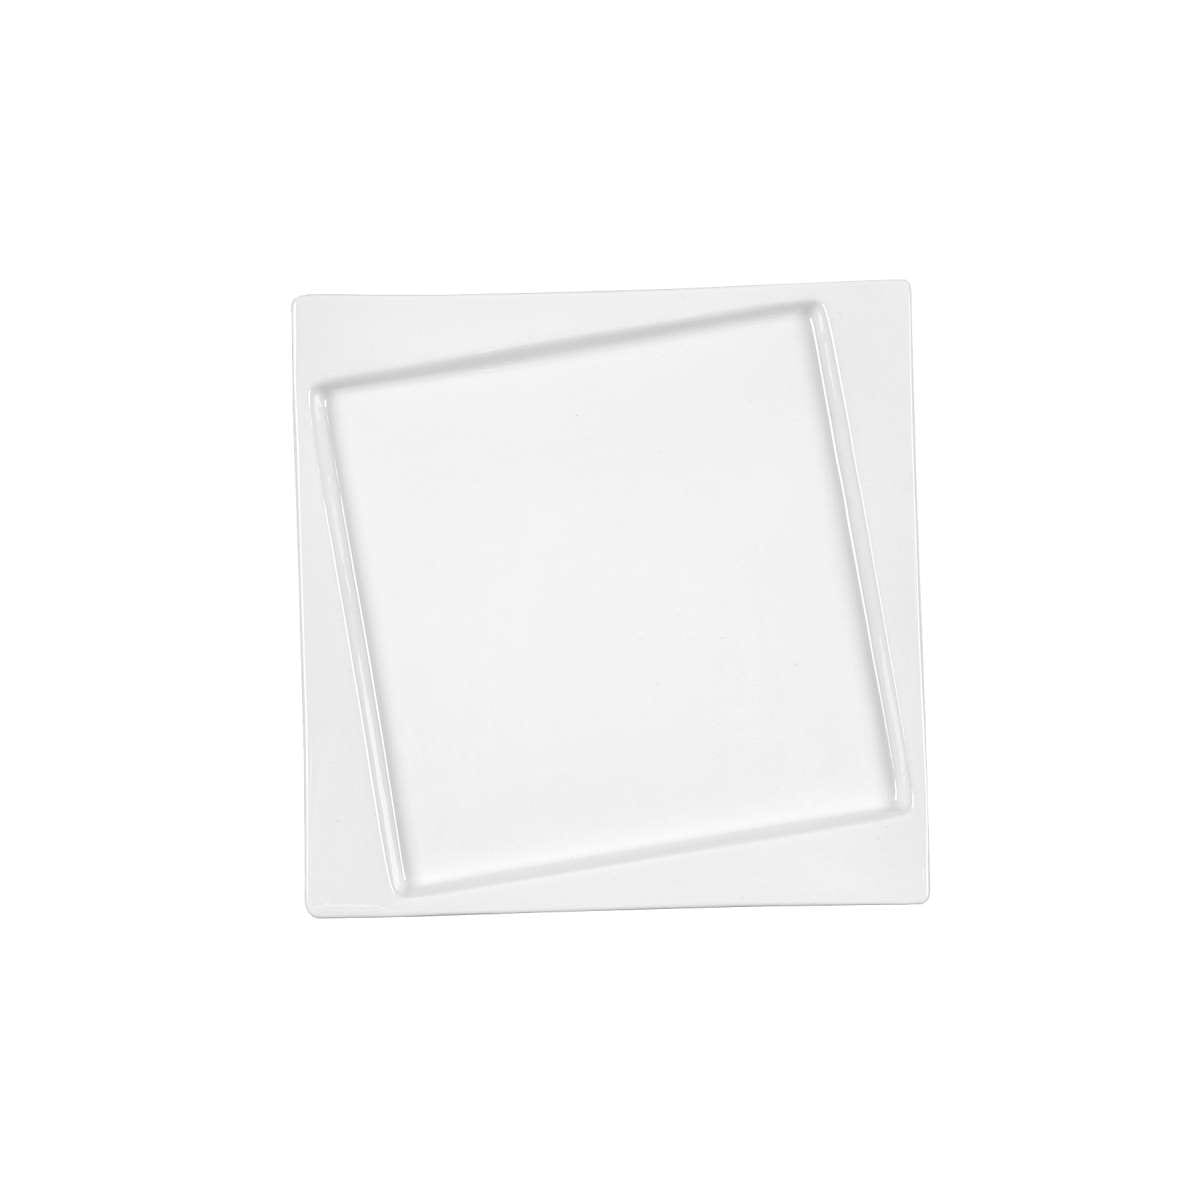 Πιάτο Φαγητού Τετράγωνο Πορσελάνης Λευκό Art Et Lumiere 26x26x2εκ. 06982 (Σετ 6 Τεμάχια) (Υλικό: Πορσελάνη, Χρώμα: Λευκό, Μέγεθος: Μεμονωμένο) - Art Et Lumiere - lumiere_06982